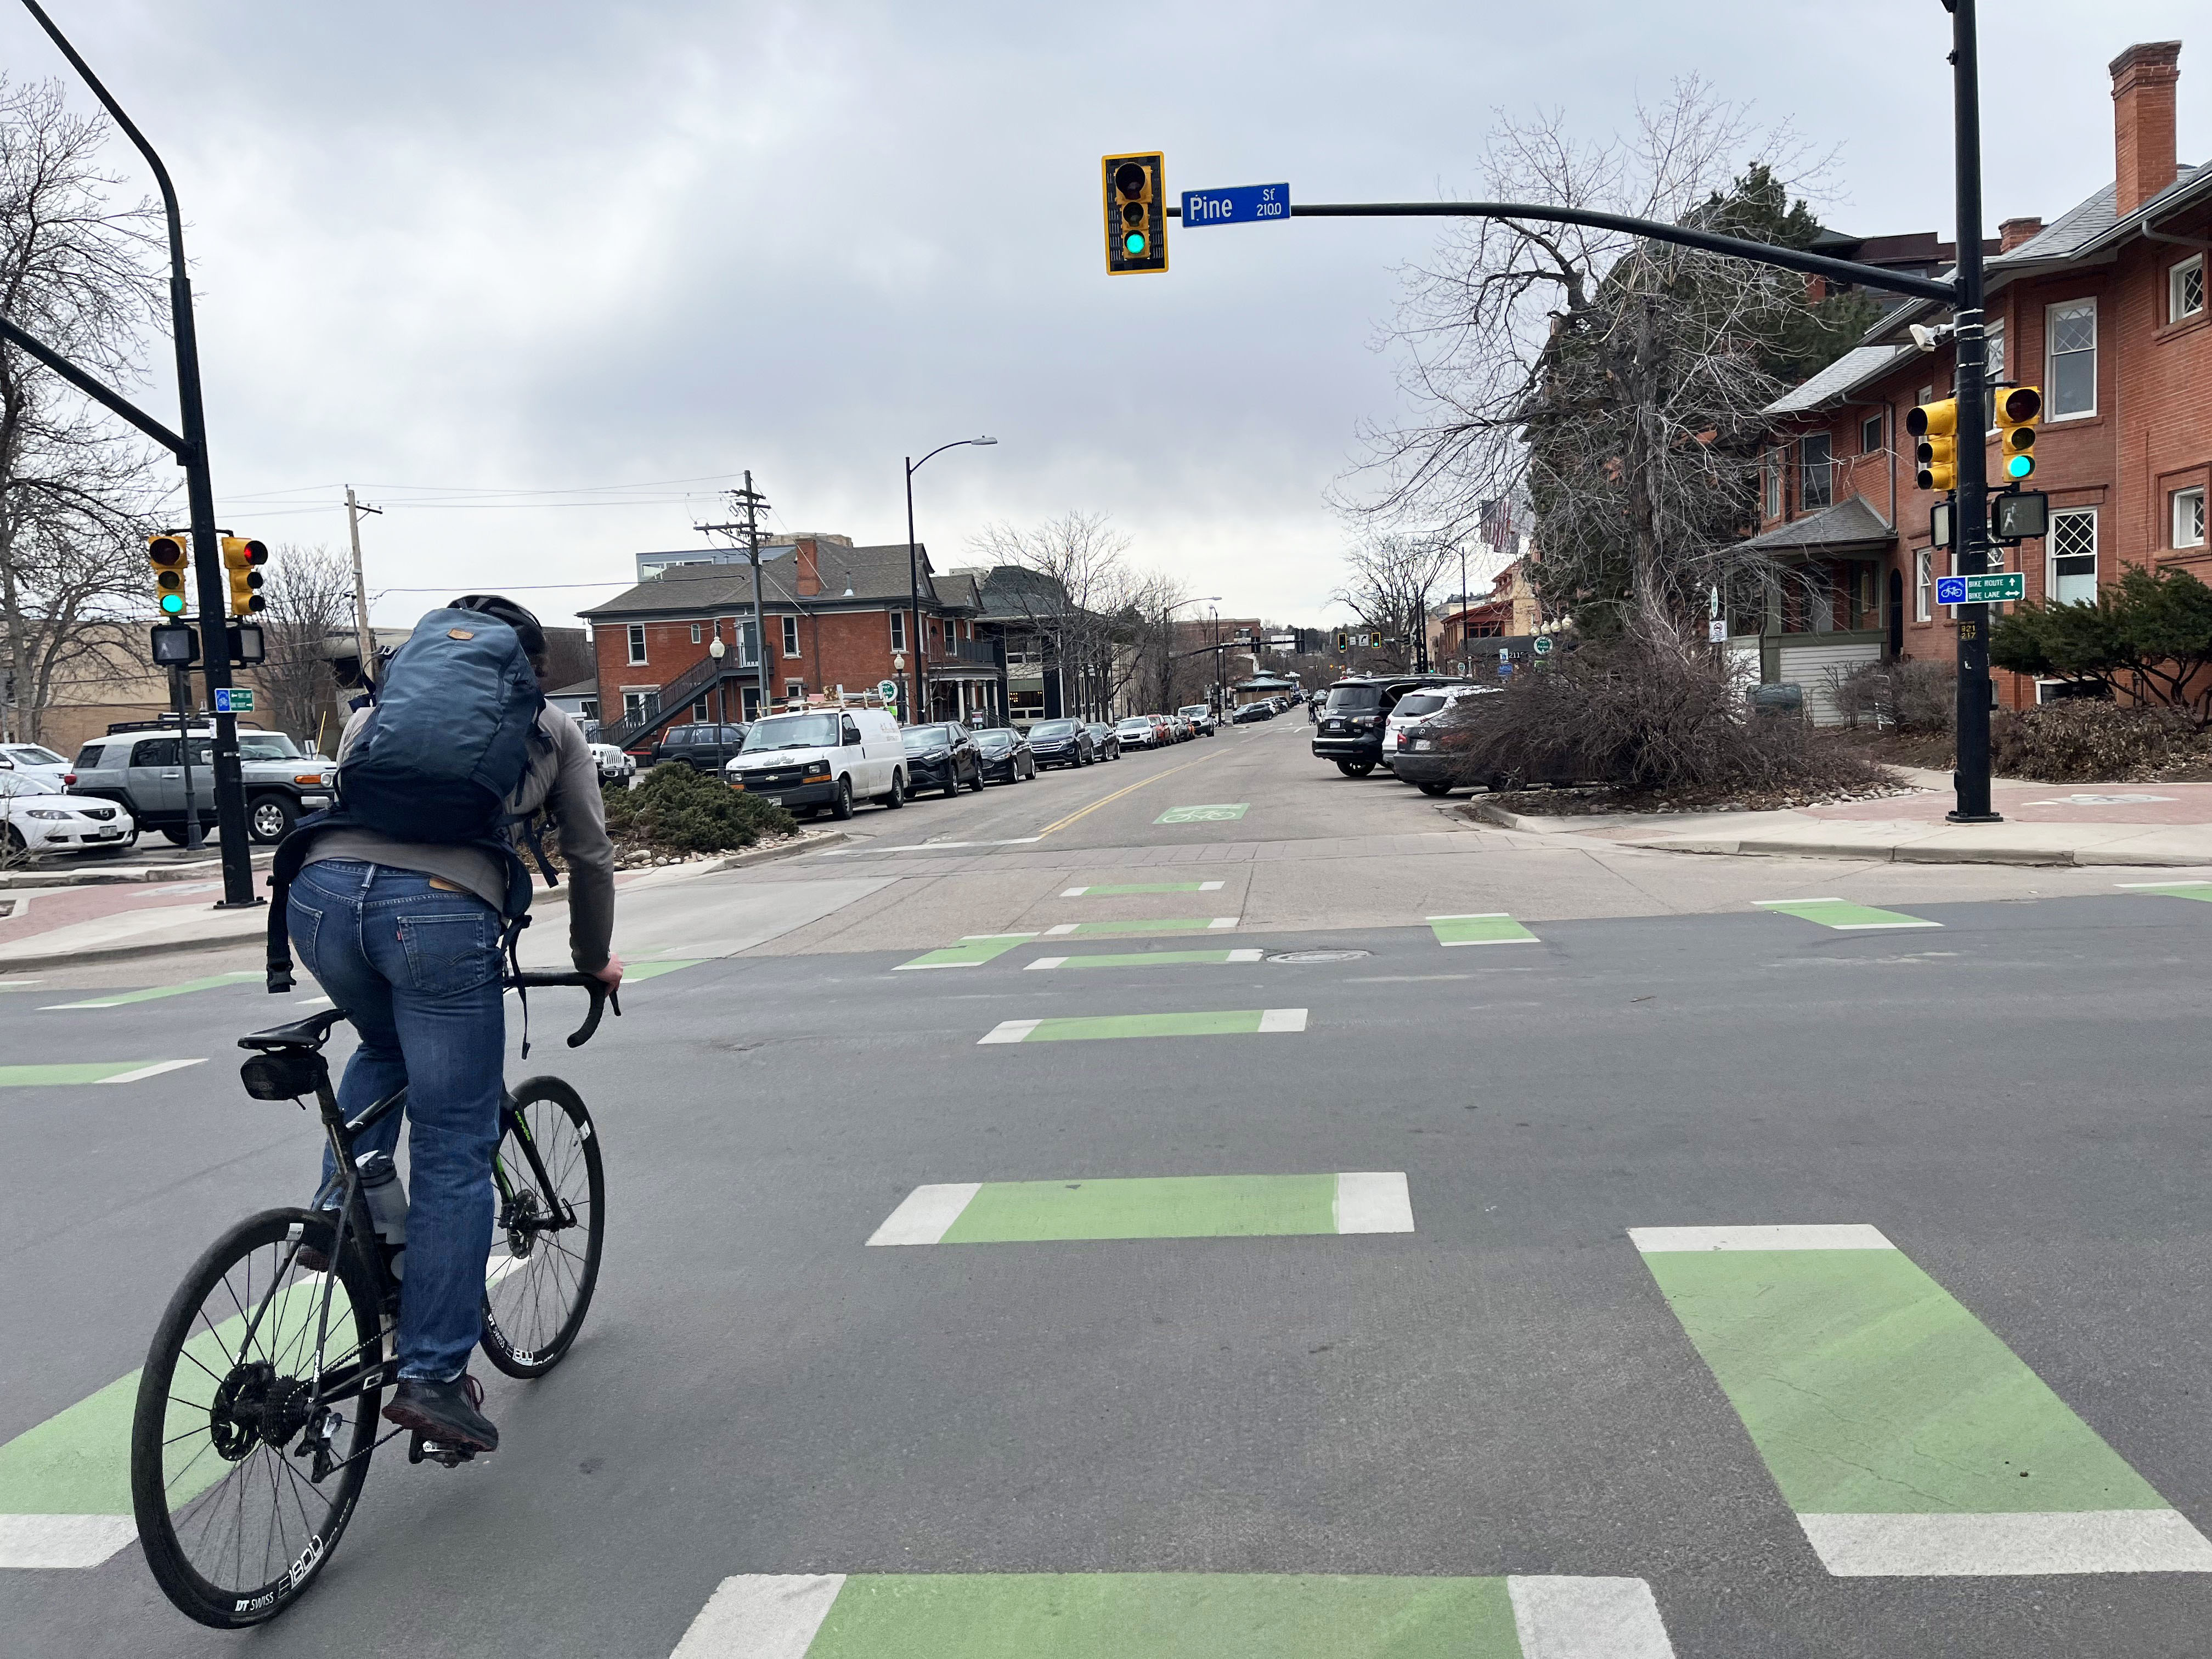 person biking on green bike lane markings in the intersection